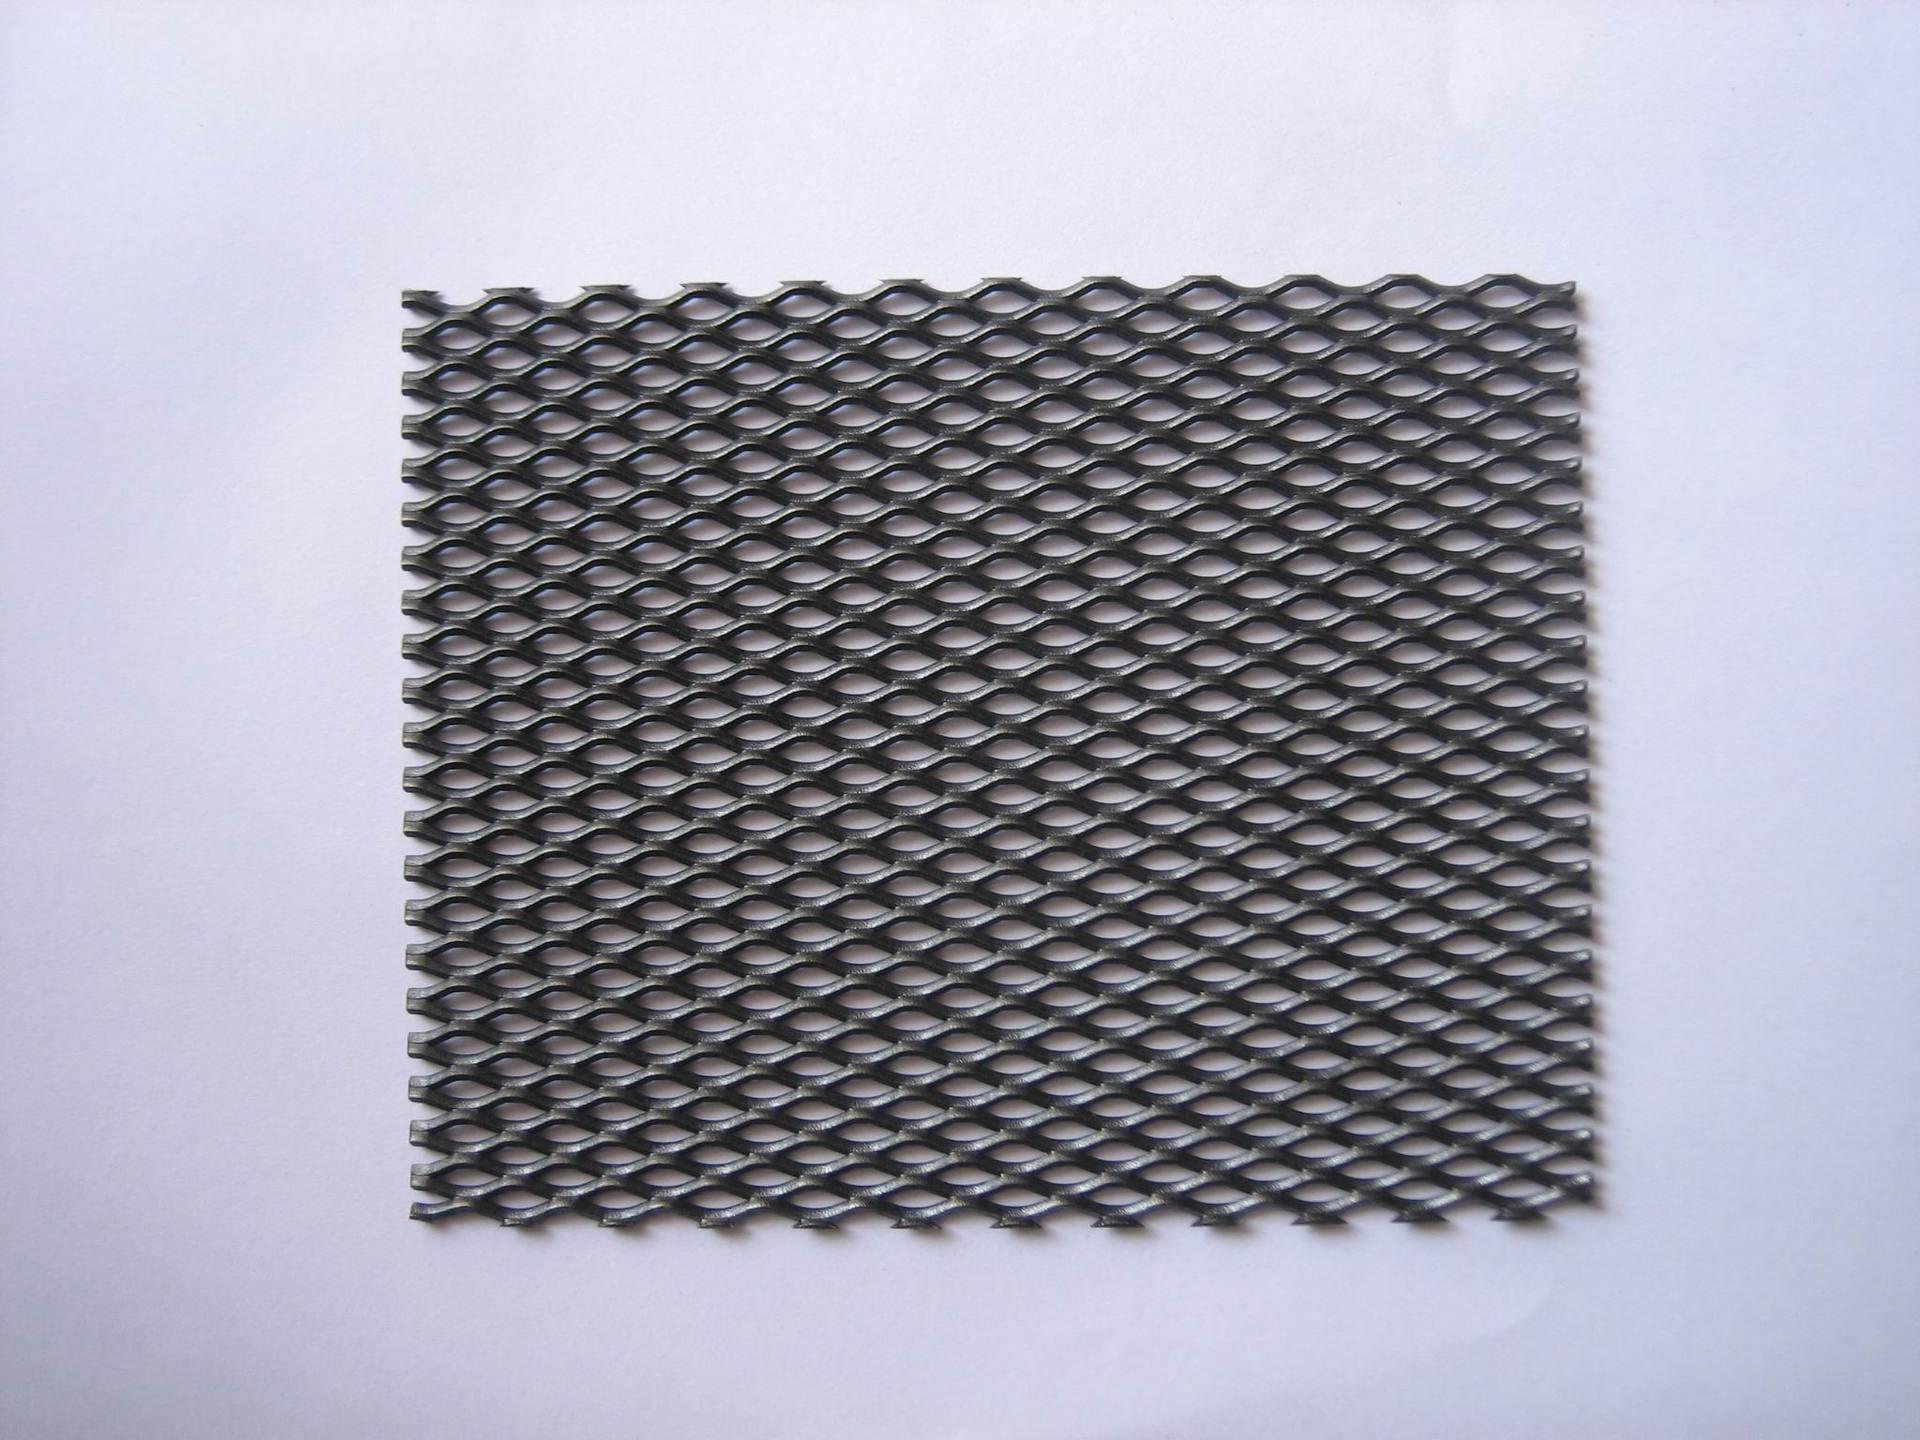 Application of titanium mesh